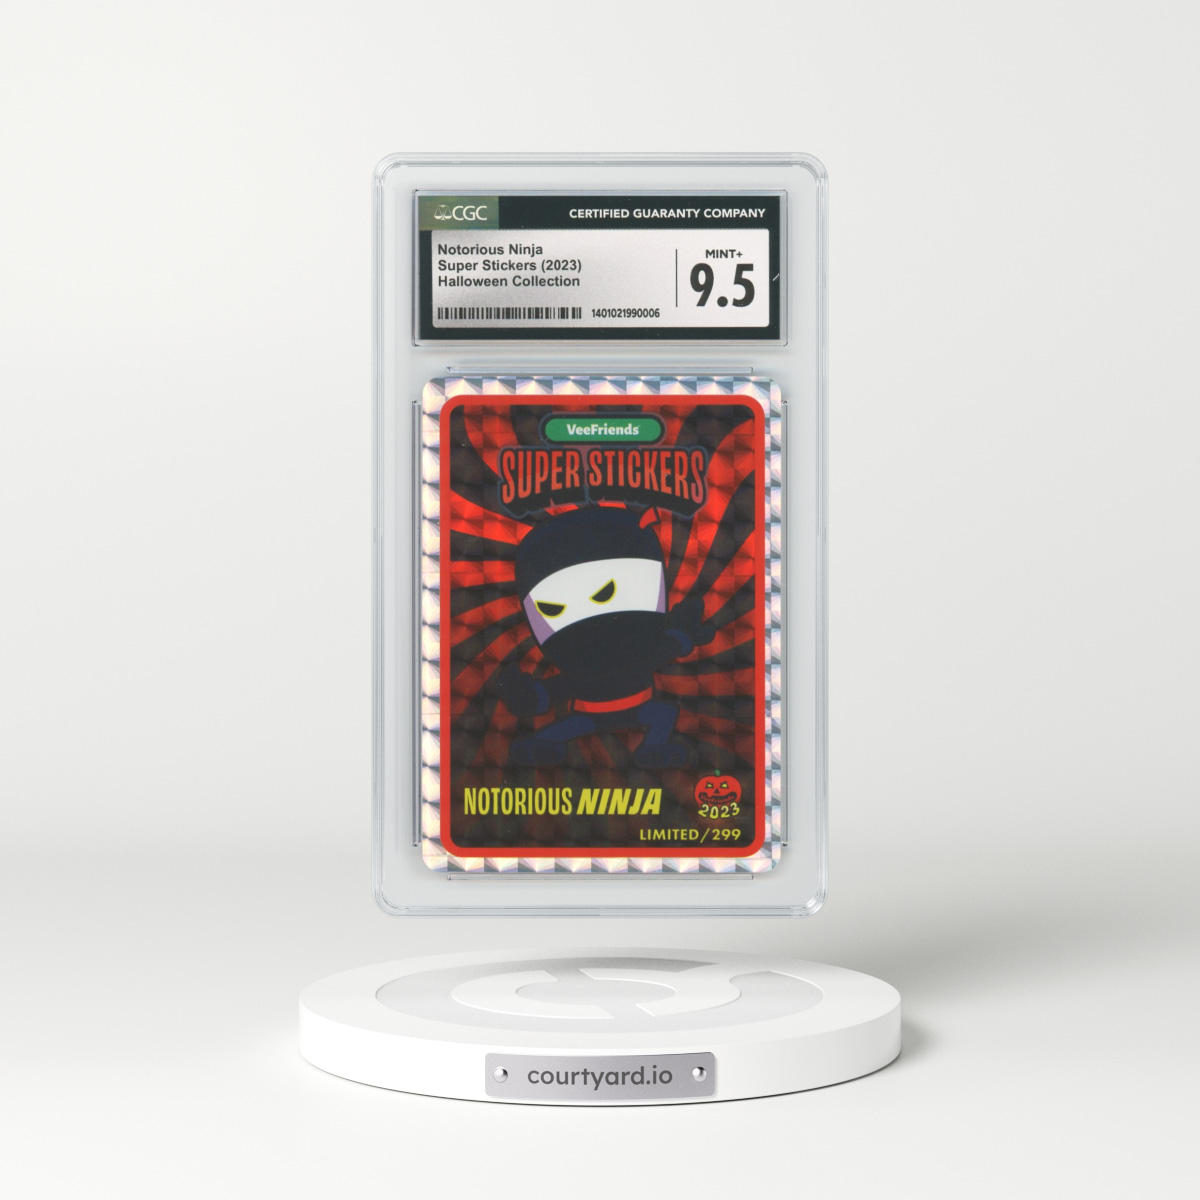 2023 VeeFriends Super Stickers Notorious Ninja - Halloween Collection (CGC 9.5 MINT+)